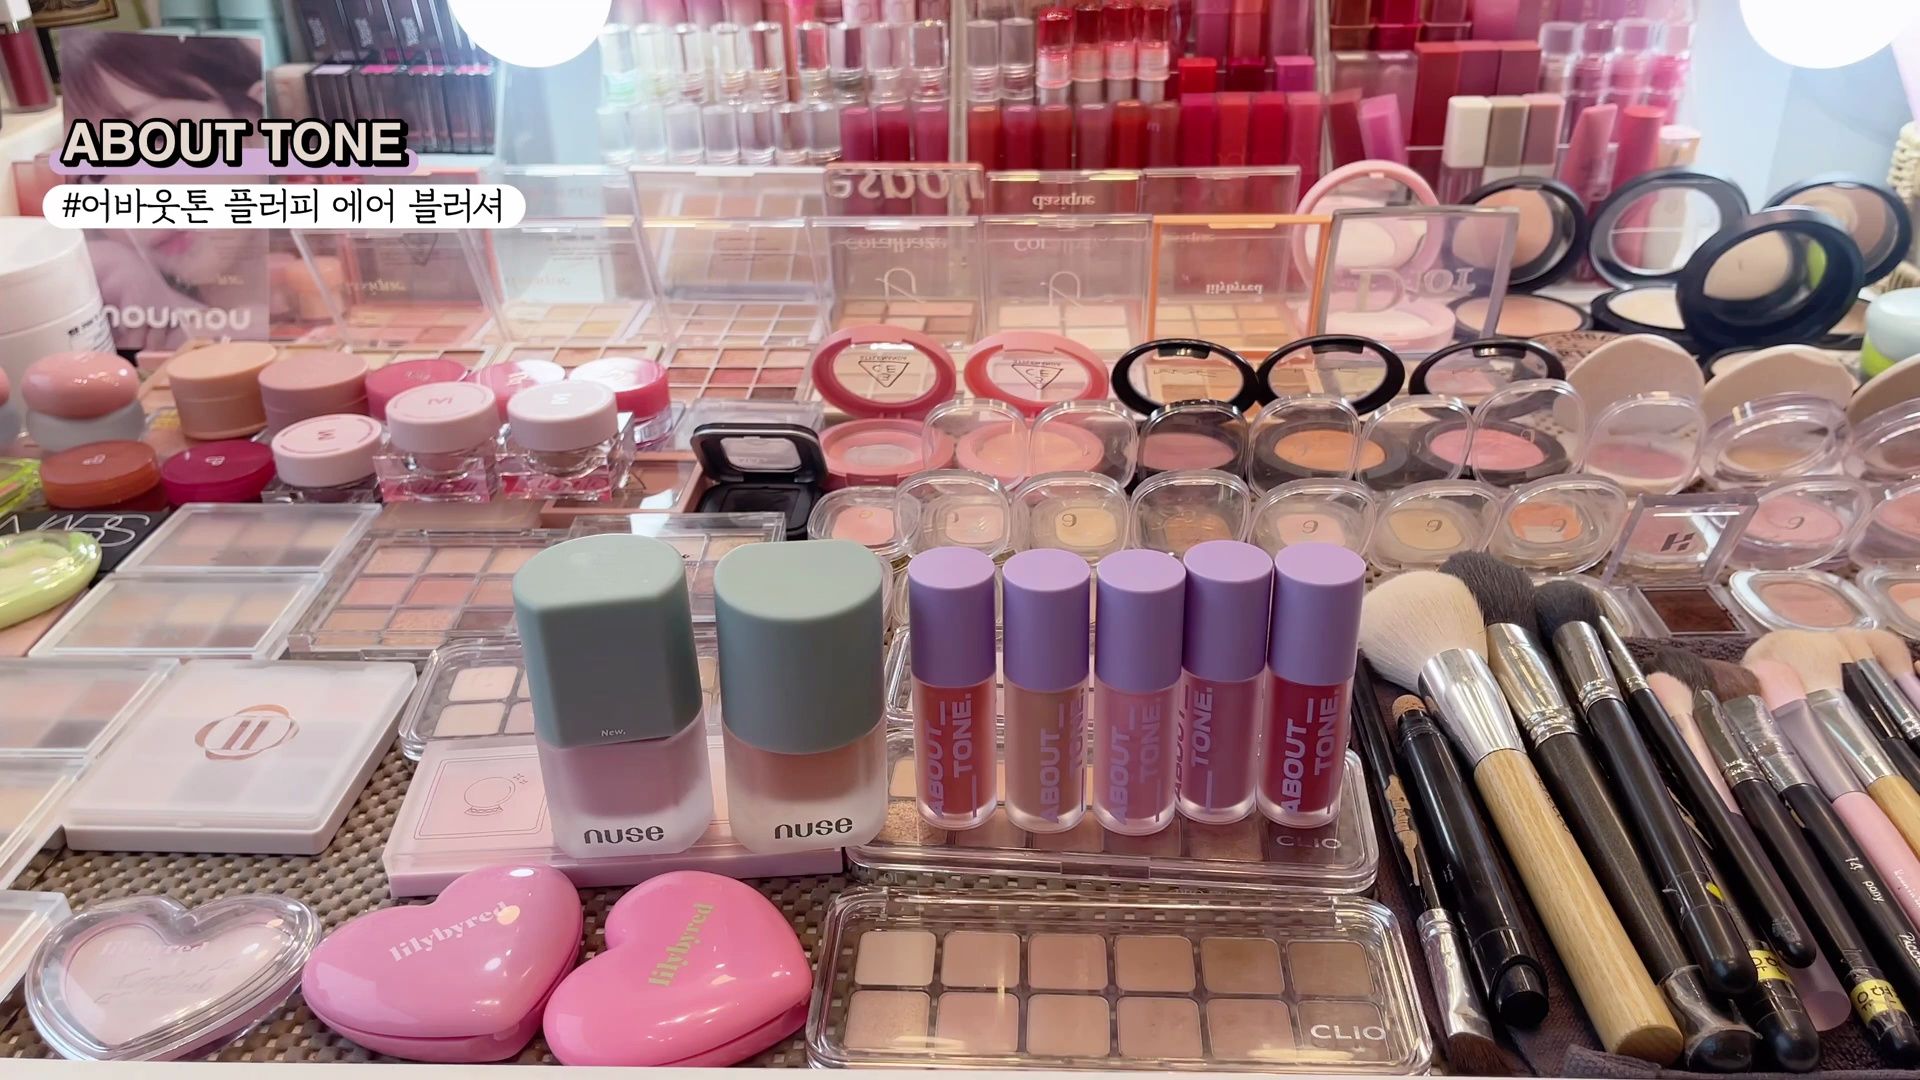 清潭洞明星化妆室常用彩妆盘点⭐️哪些产品最受欢迎?【yangsmile】